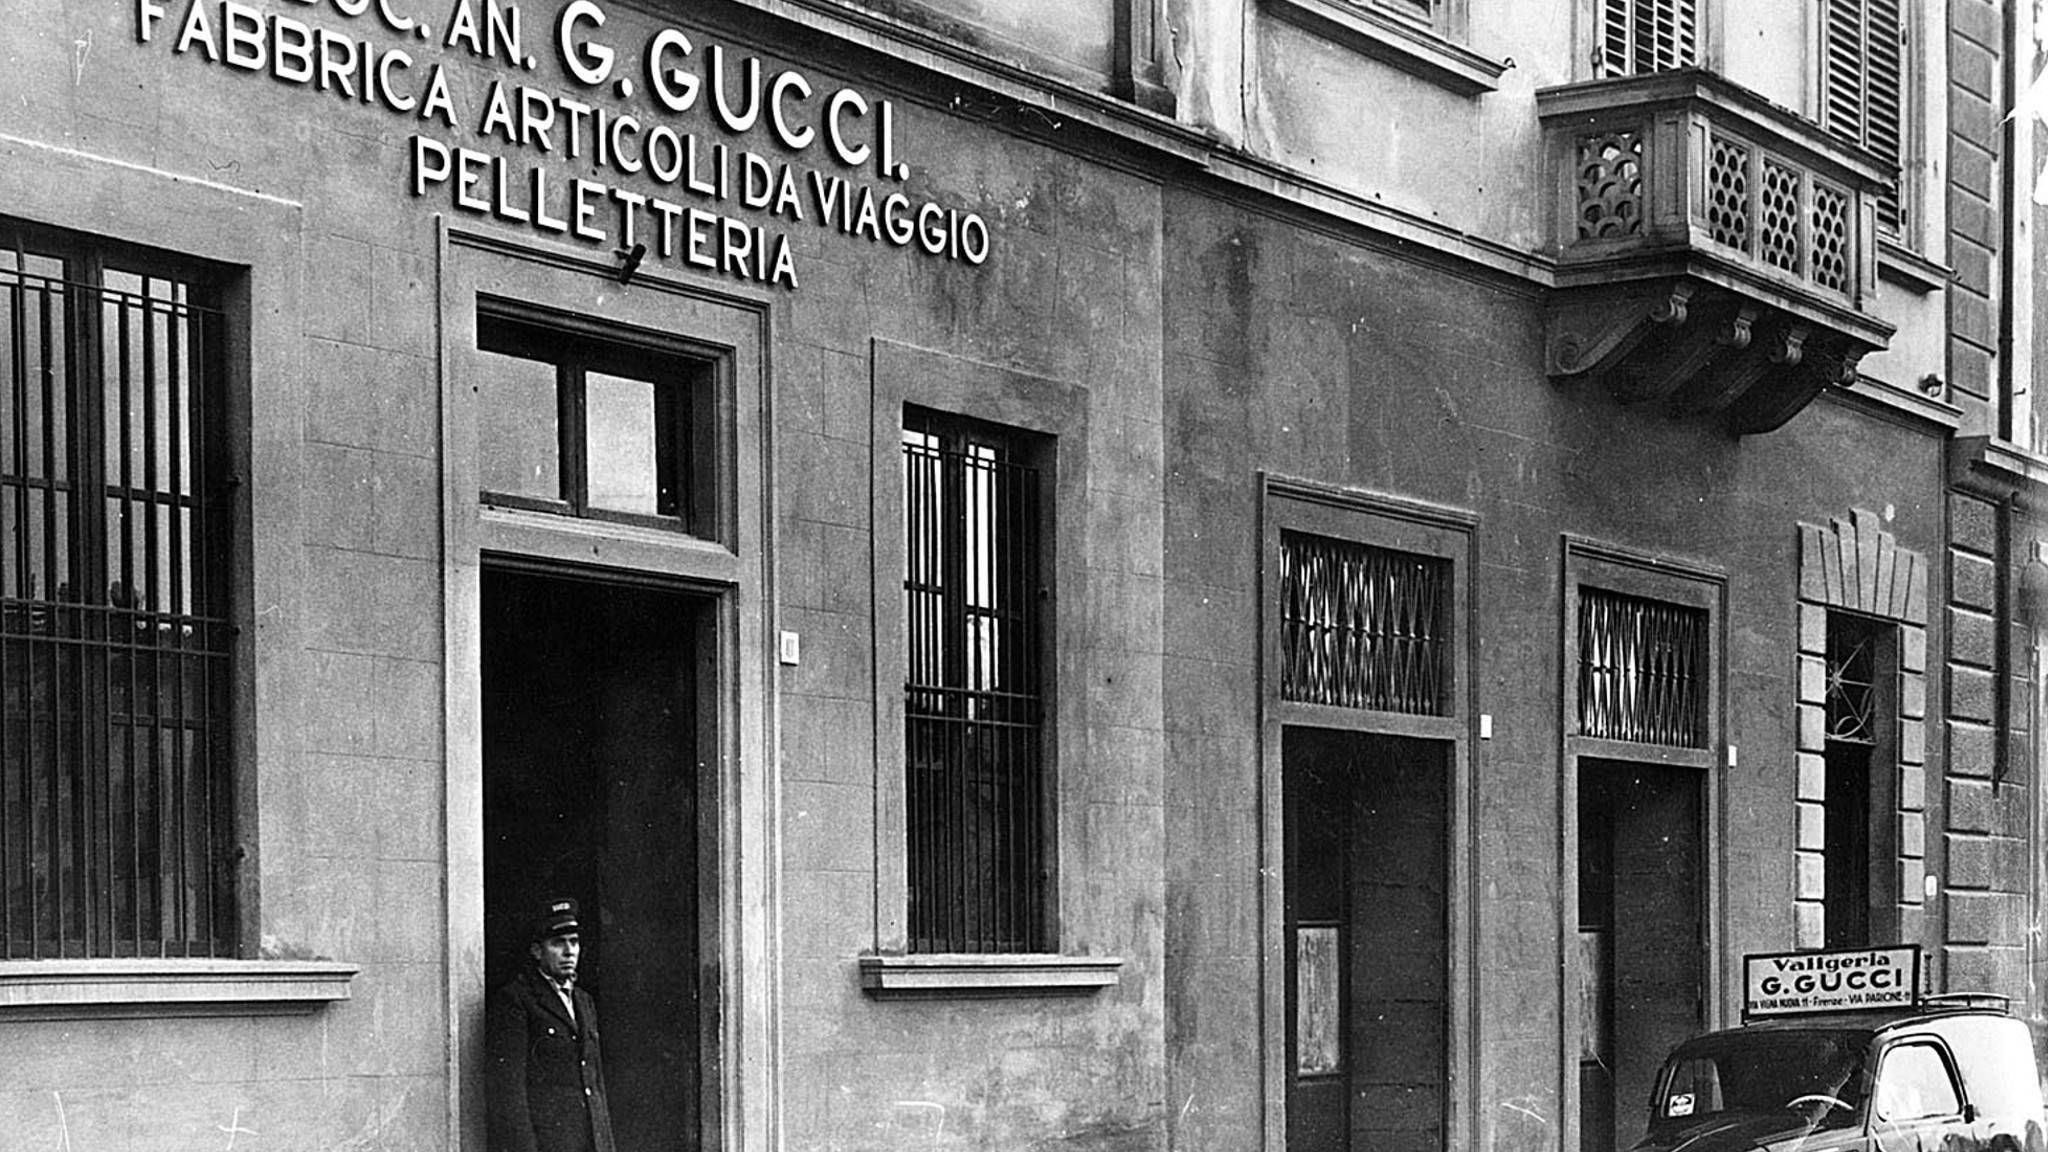 Gucci là một thương hiệu thời trang cao cấp của Ý được thành lập vào năm 1921 bởi Guccio Gucci.